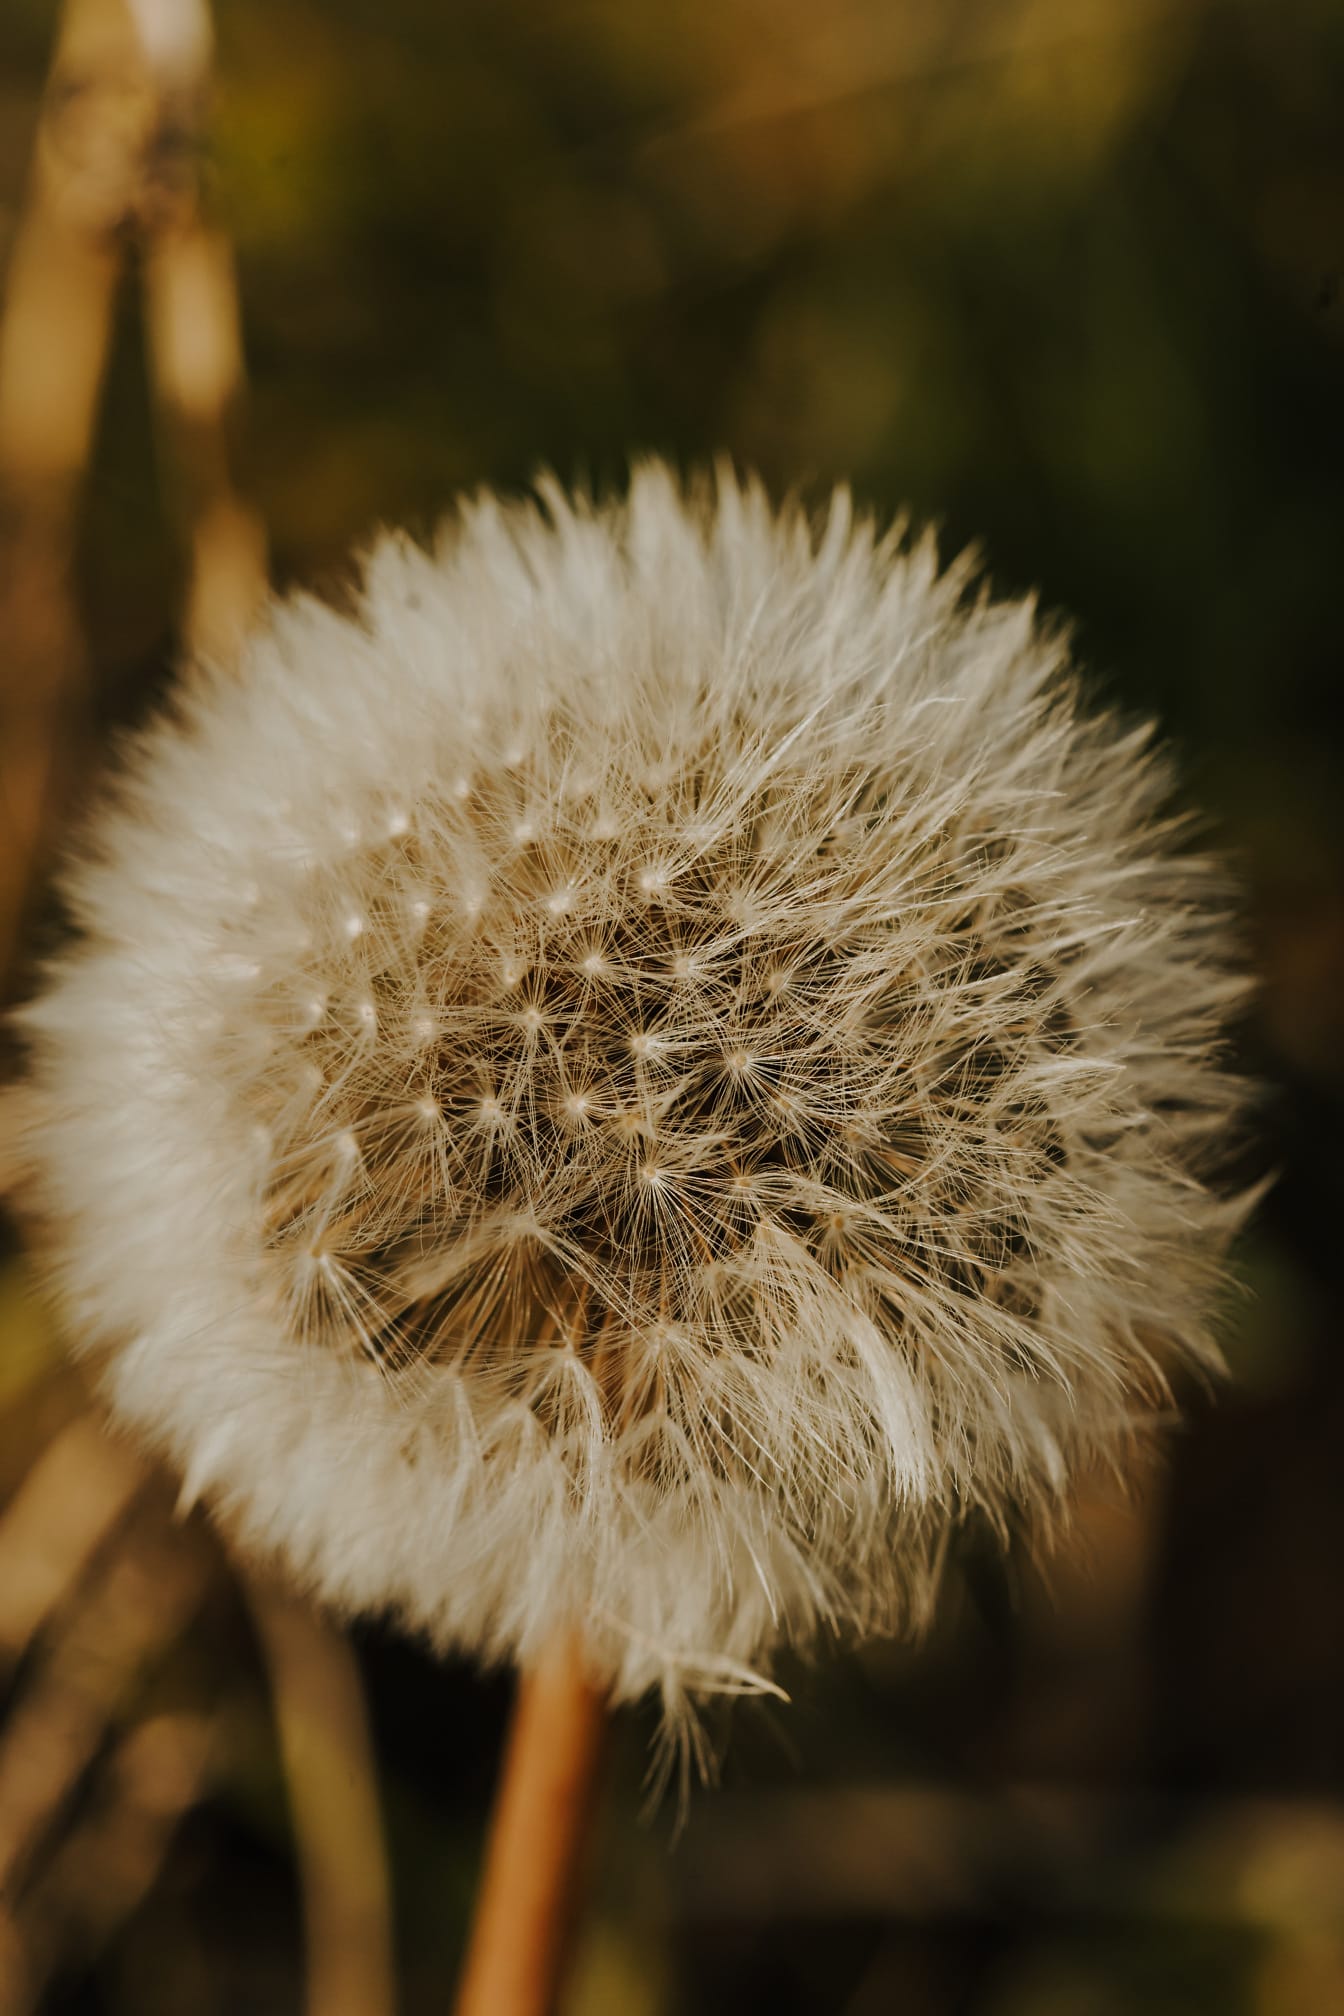 Close-up of dandelion flower seeds